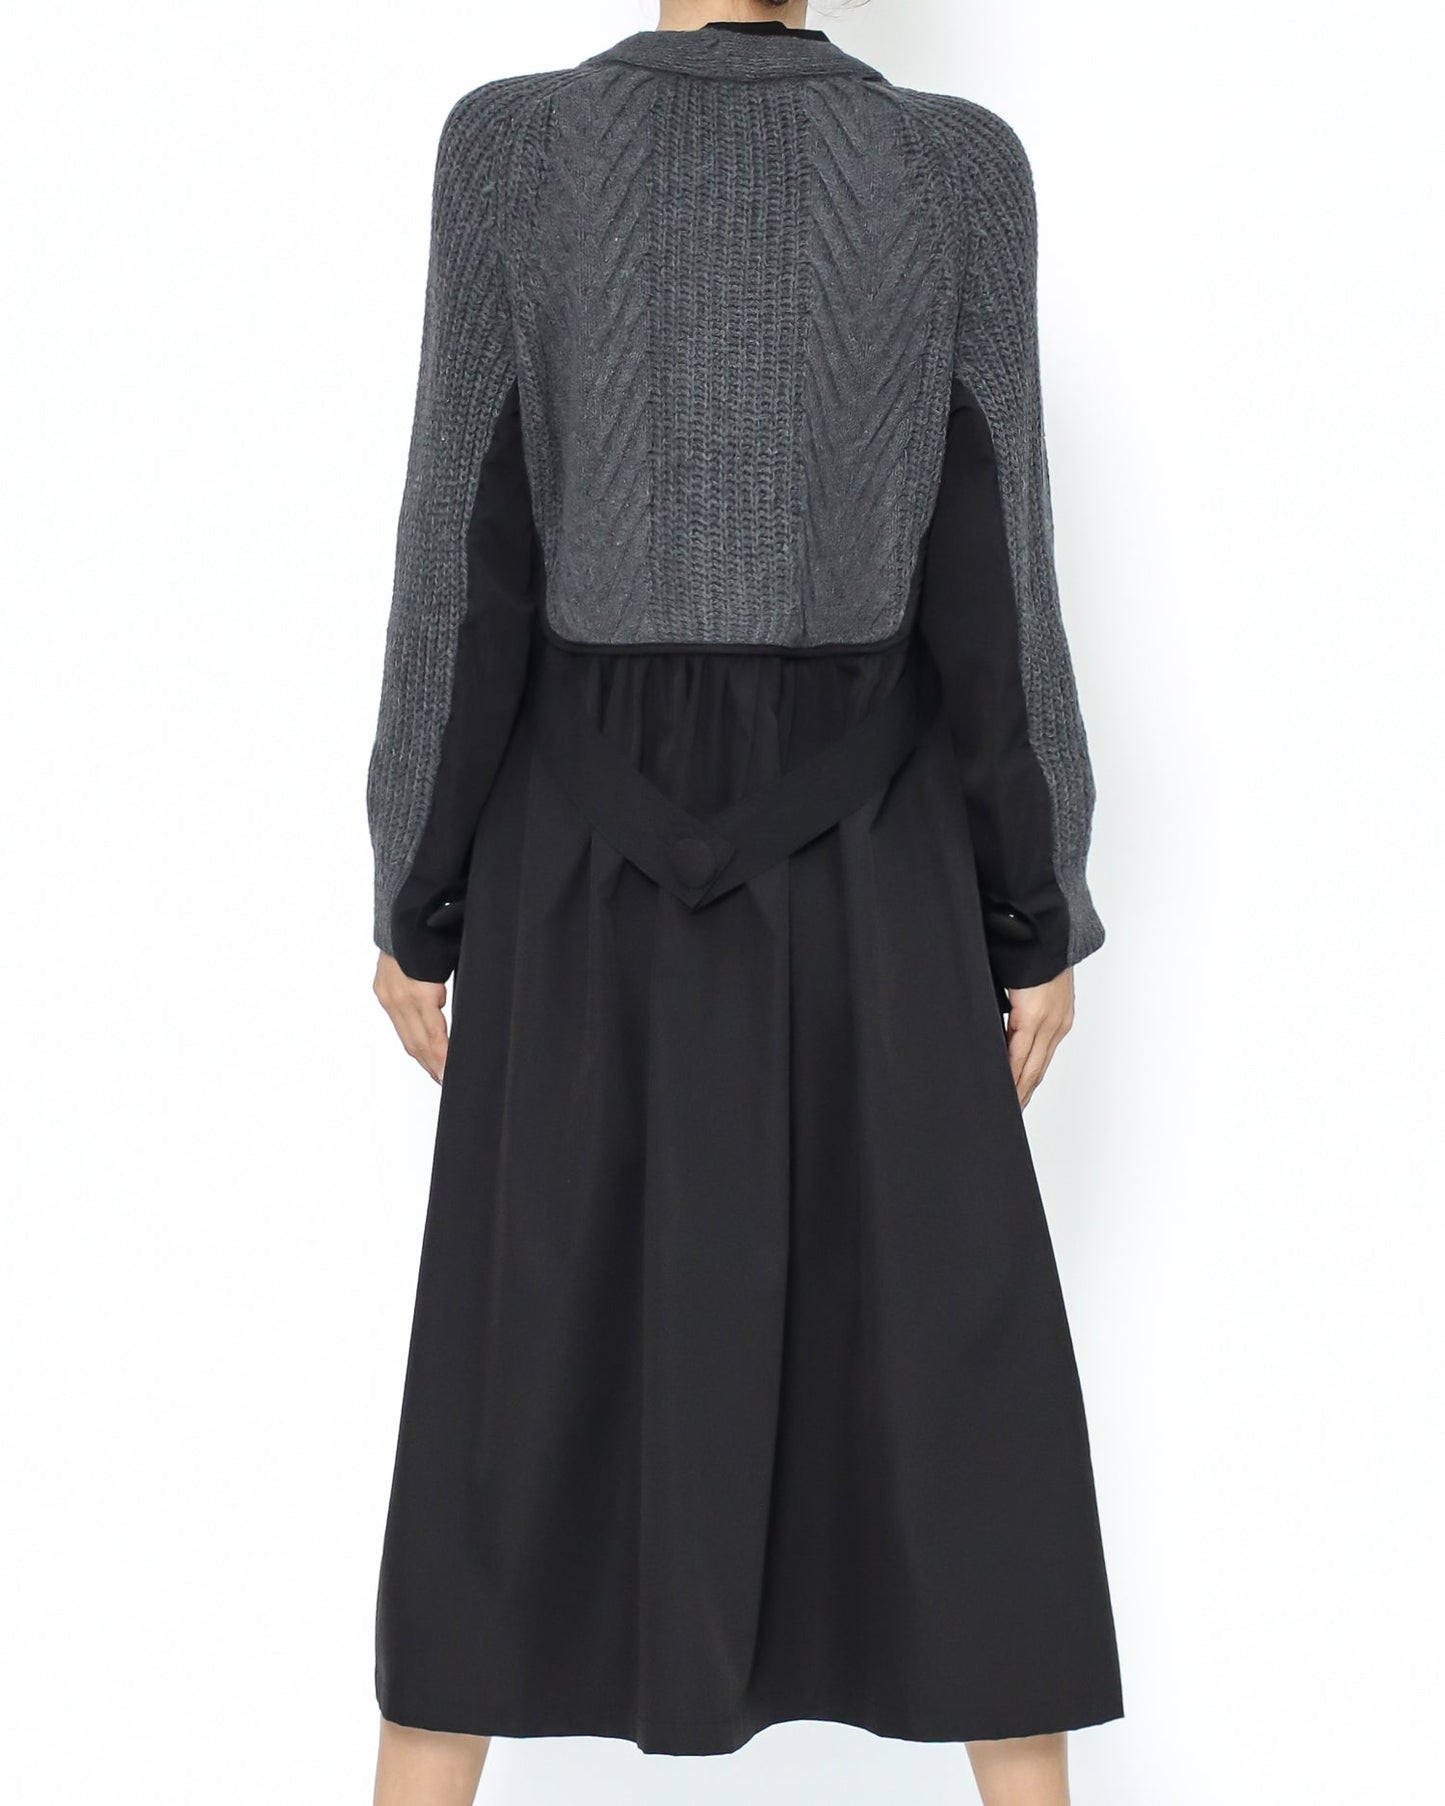 black shirt & grey knitted vest dress *pre-order*